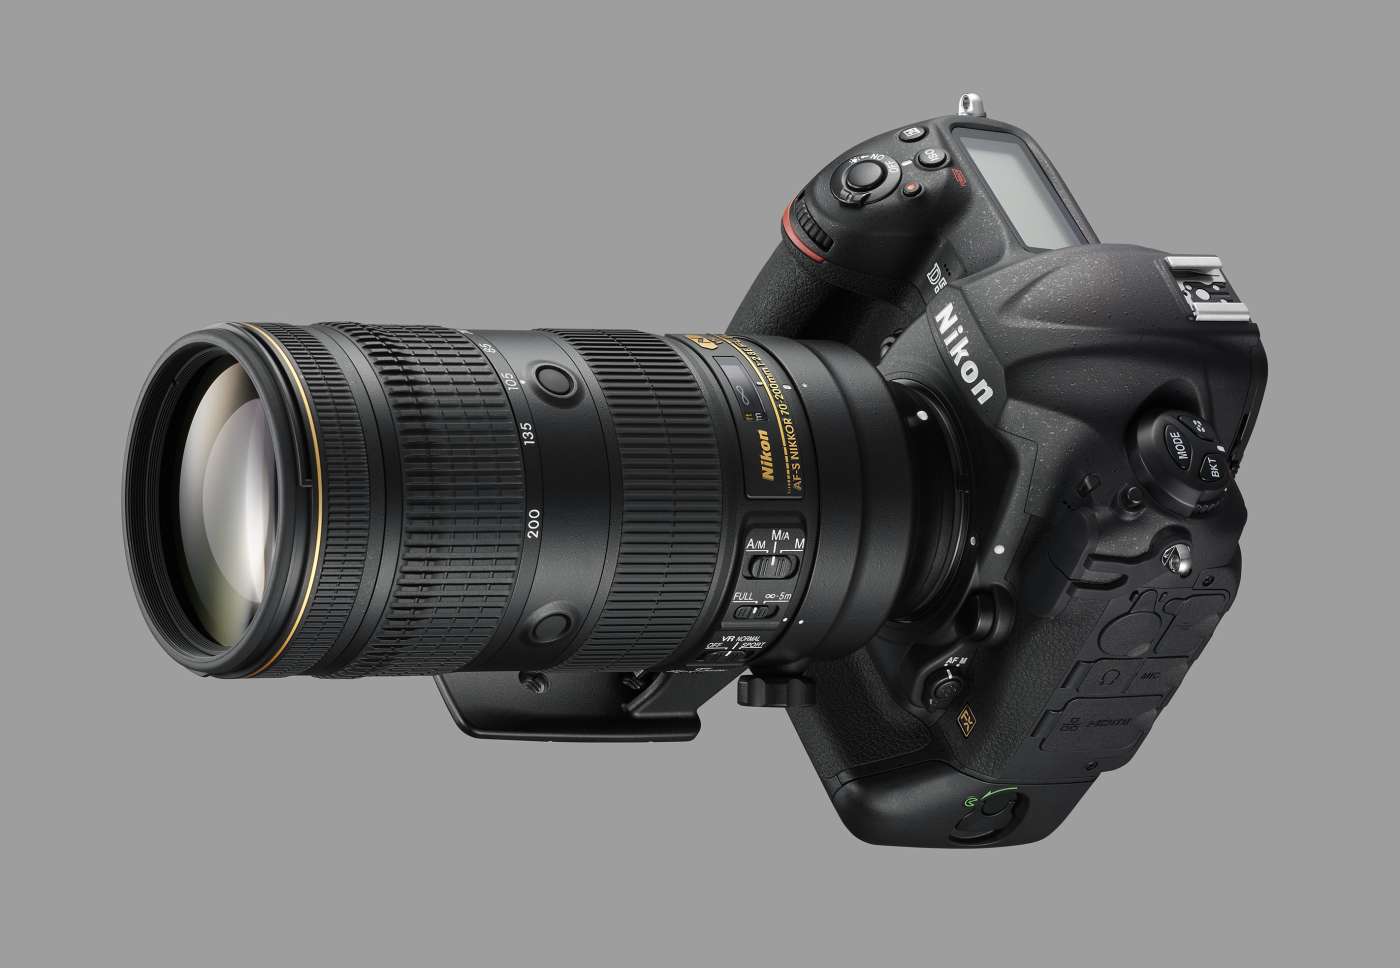 AF-S NIKKOR 70-200mm f/2.8E FL ED VR Lens now In Stock & Shipping !